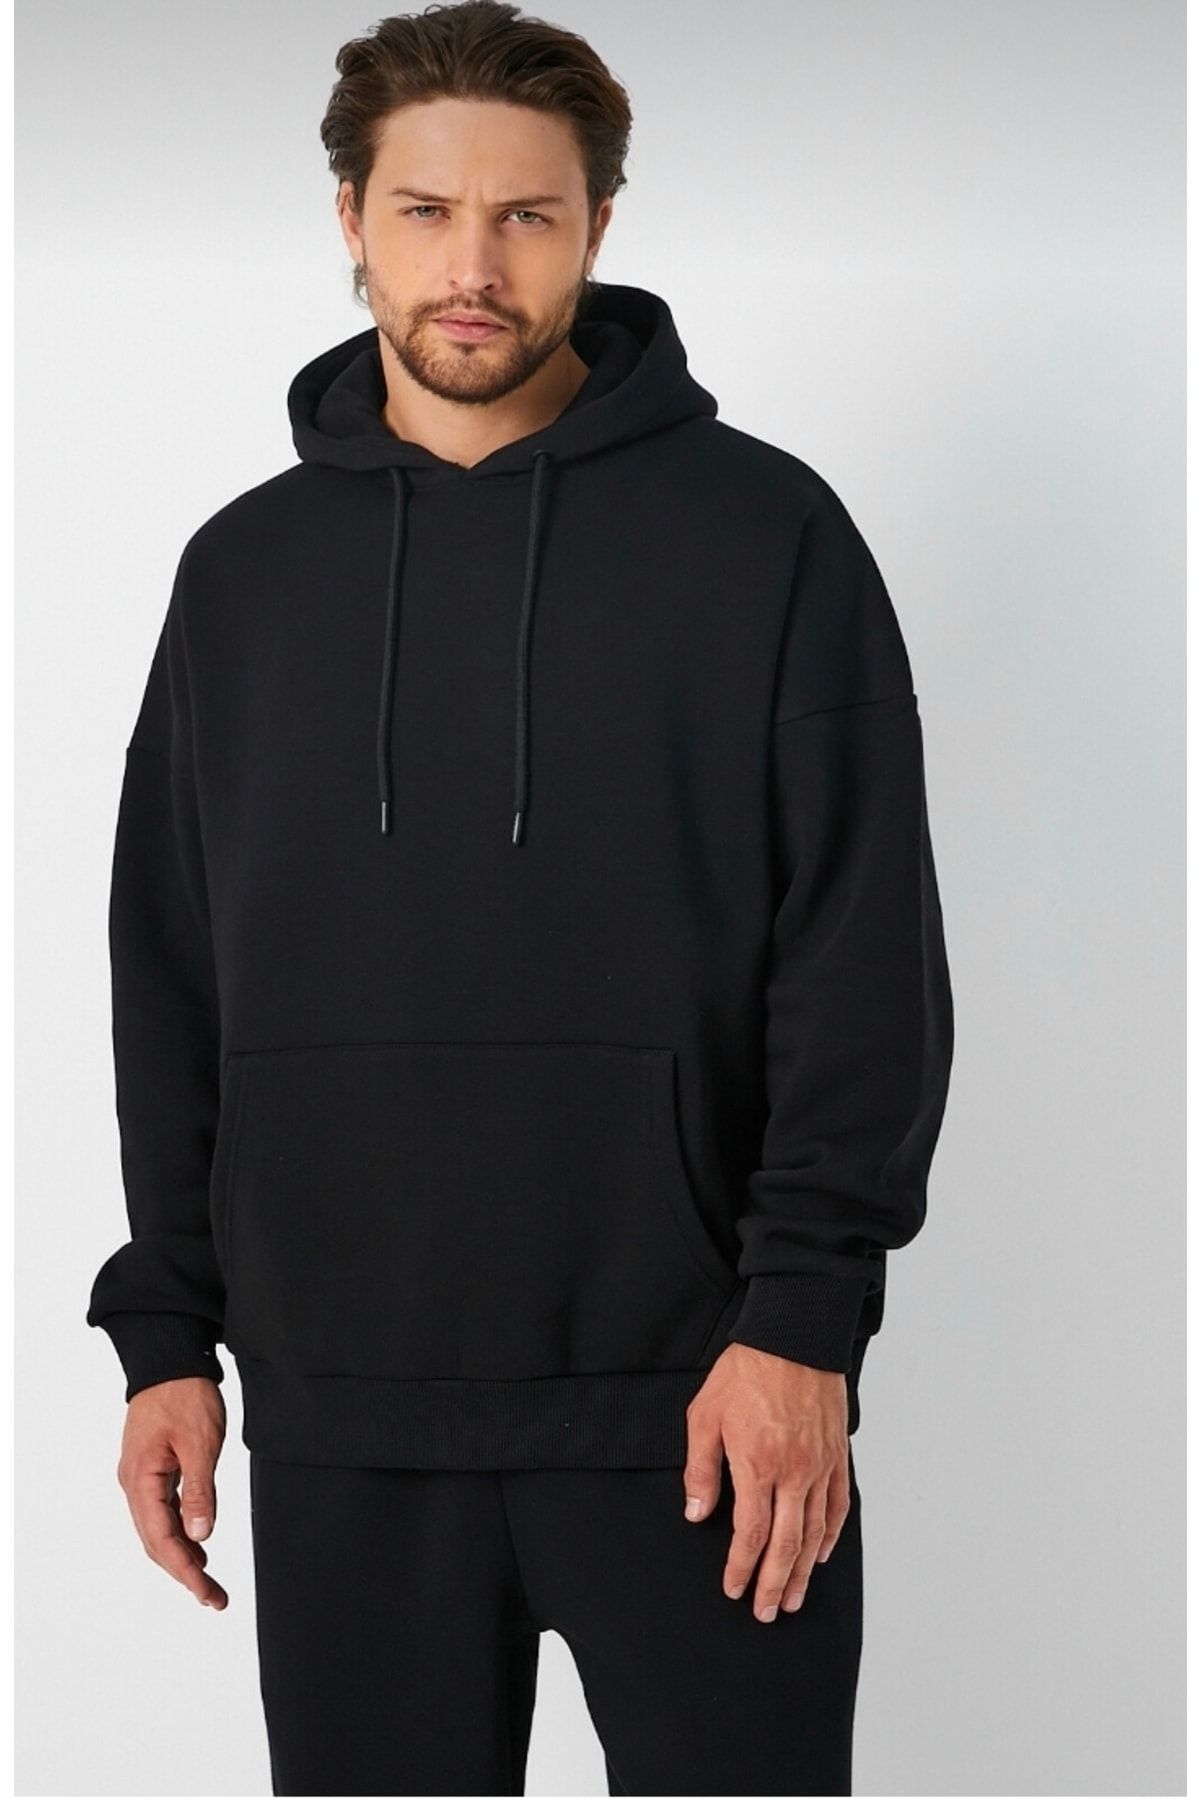 Breezy Siyah Erkek Oversize Sweatshirt & Kapşonlu Unisex Sweatshirt